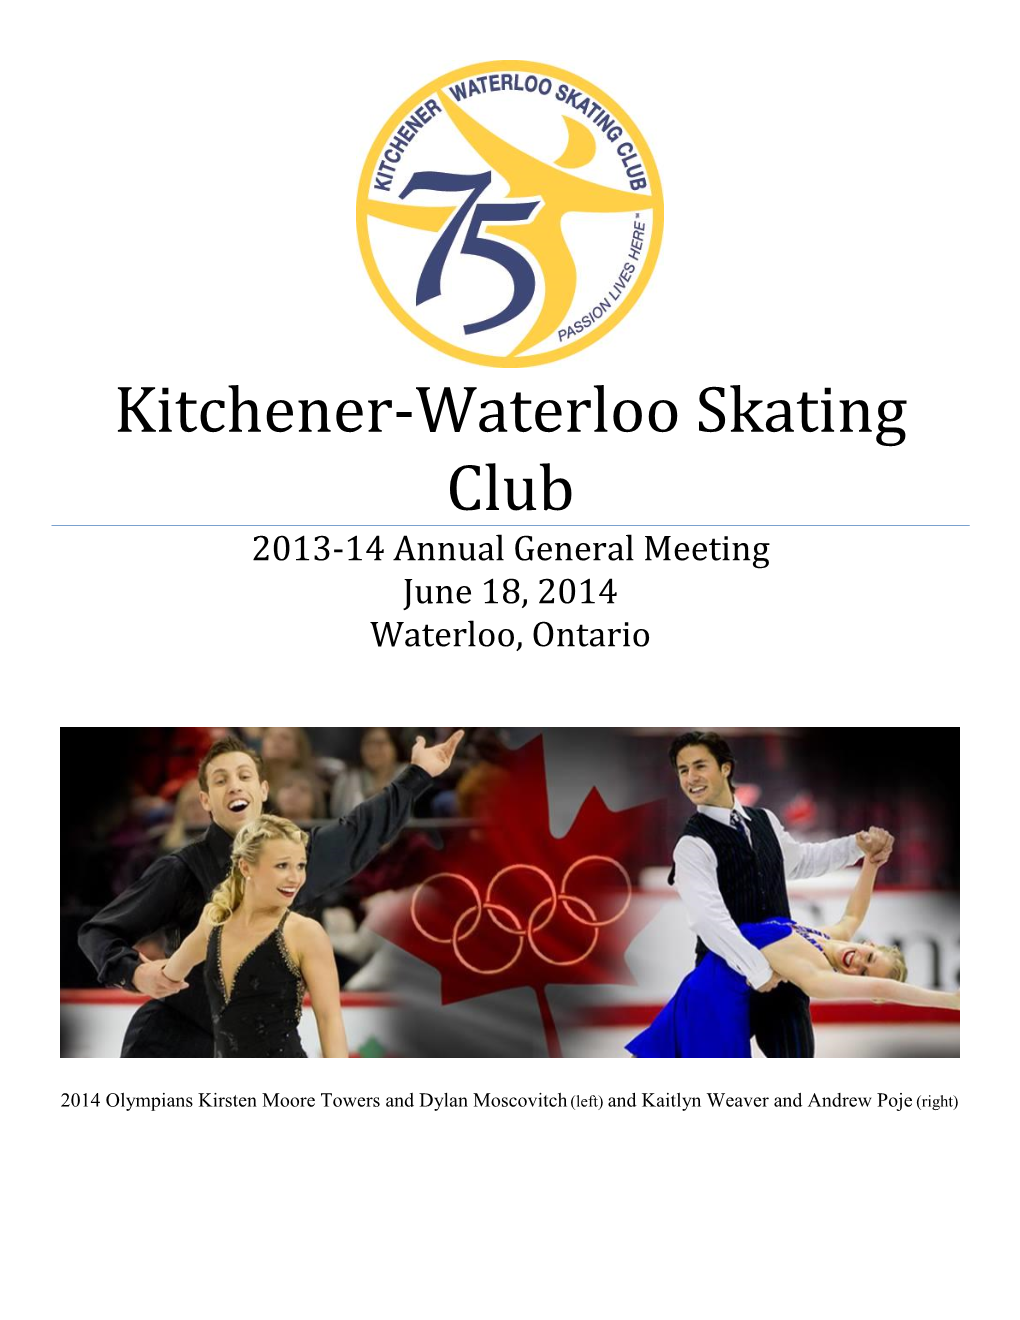 Kitchener-Waterloo Skating Club 2013-14 Annual General Meeting June 18, 2014 Waterloo, Ontario